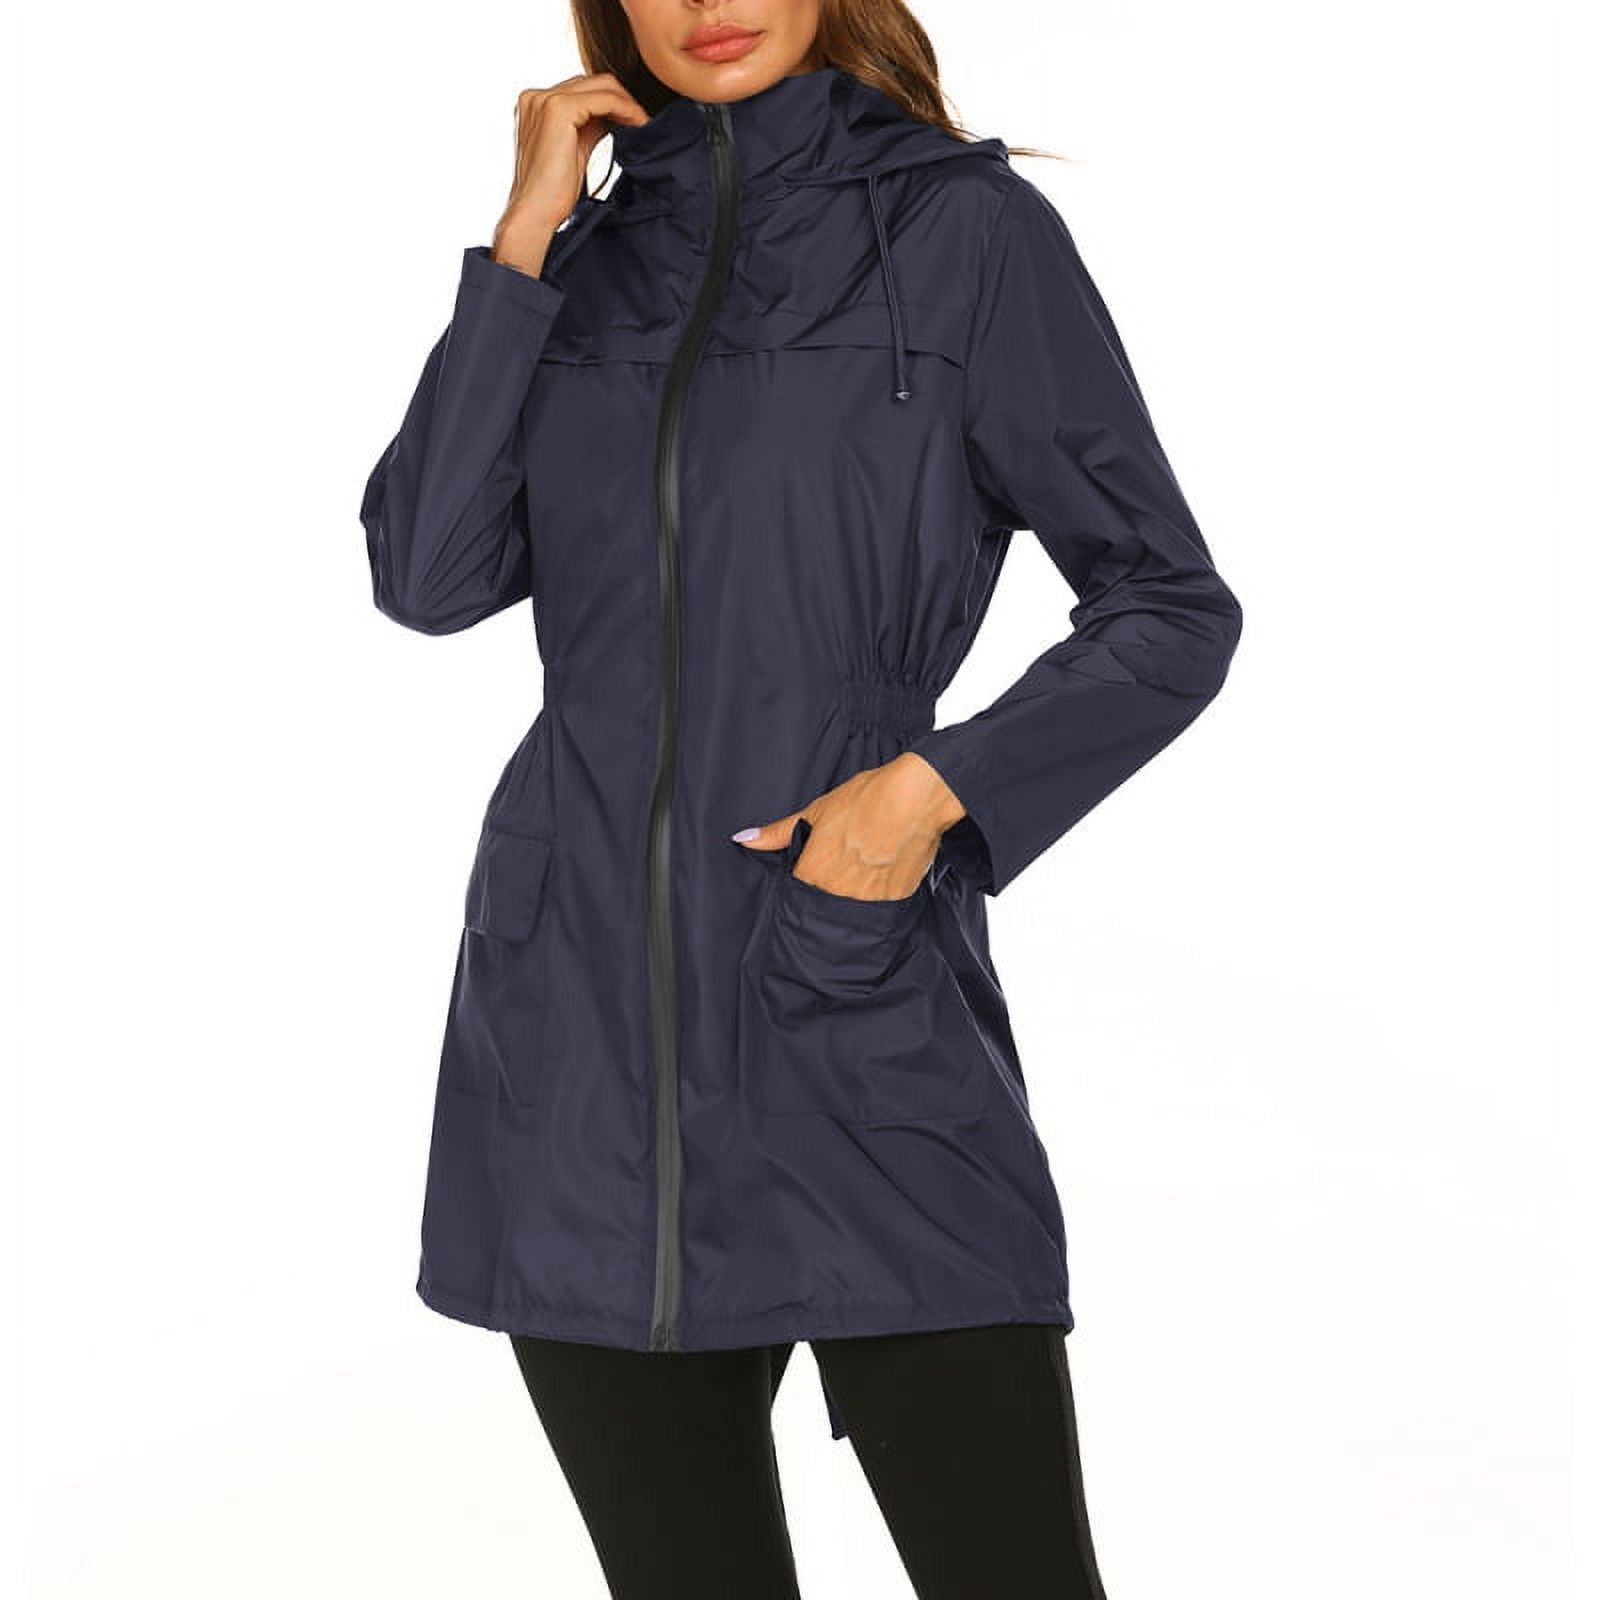 Women Waterproof Lightweight Rain Jacket Packable Outdoor Hooded Raincoat - image 4 of 5